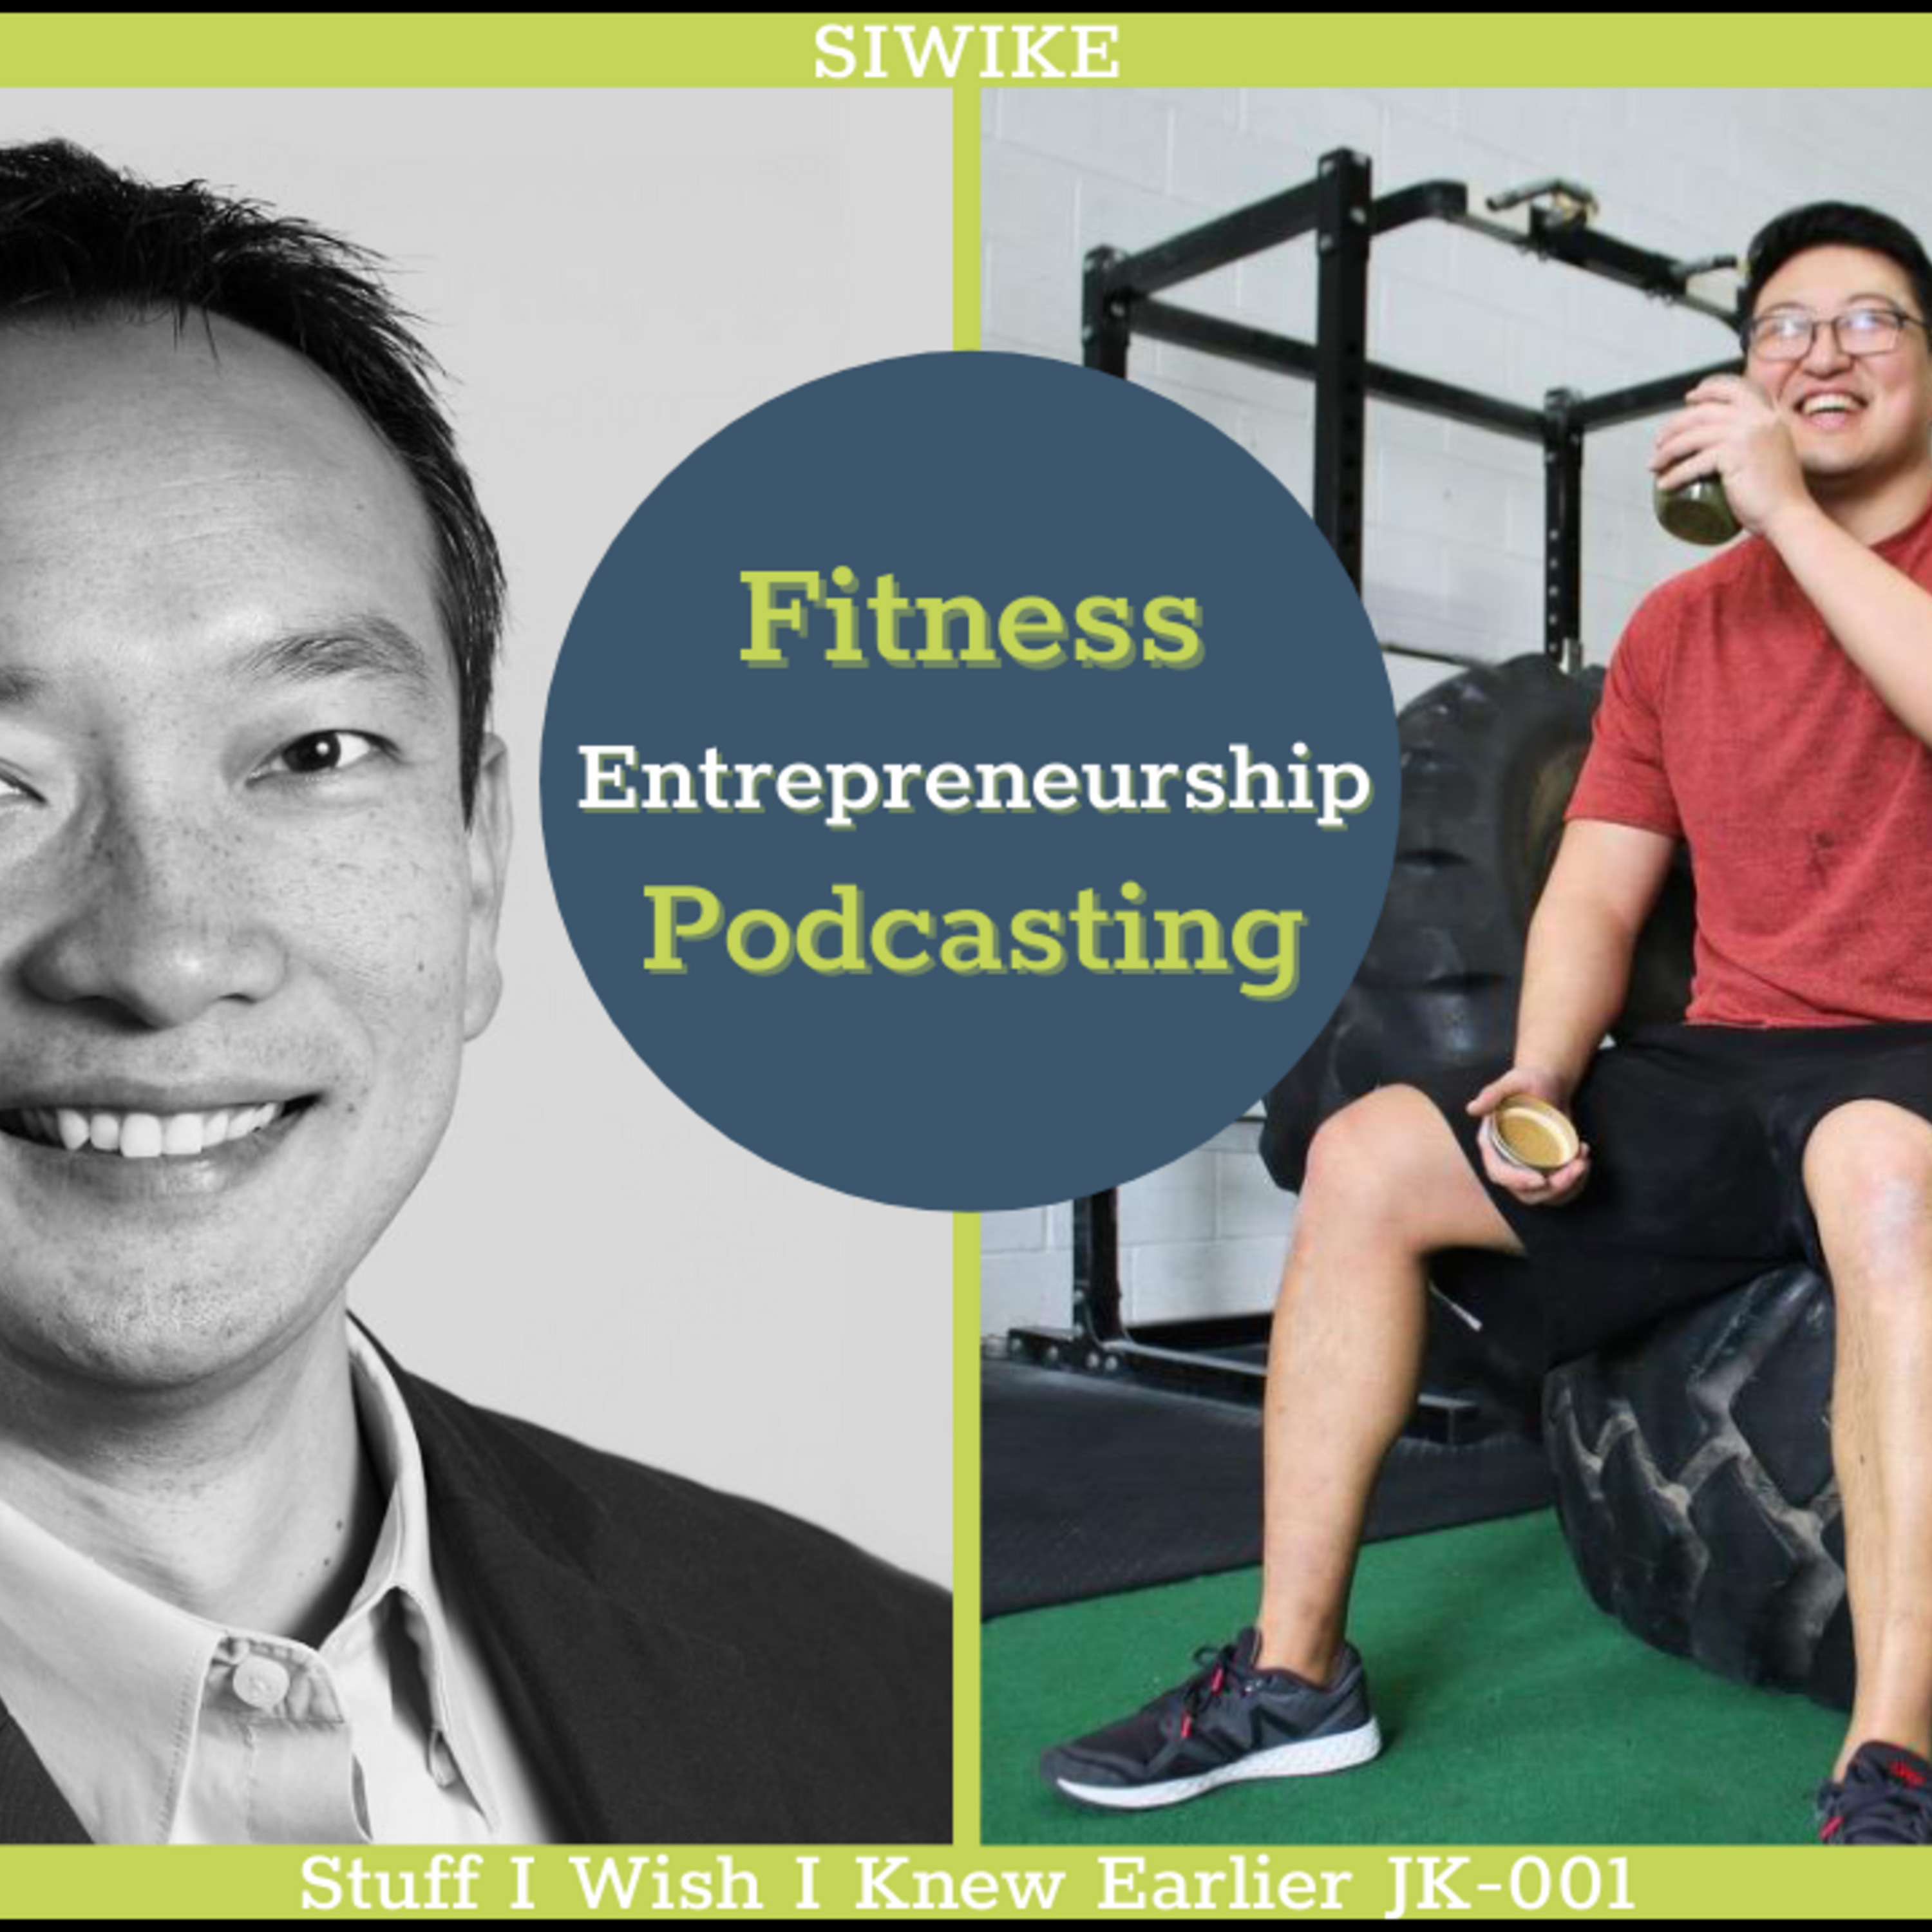 Entrepreneurship, Fitness and Podcasting - Jimmy Kim JK-001 MENTOR CORNER